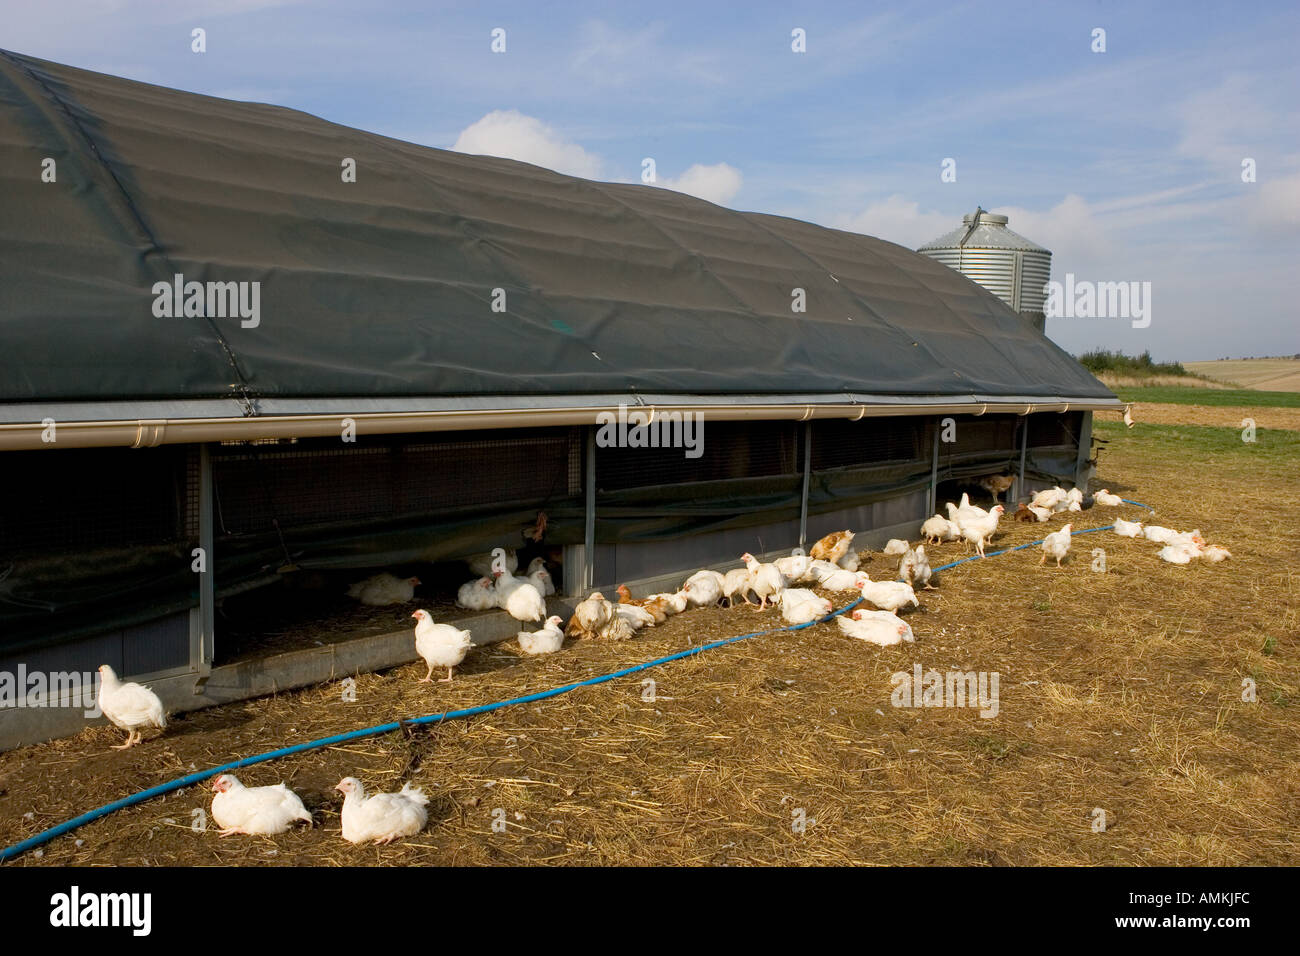 Freilaufenden Hühnern Rasse Isa 257 herumlaufen frei und aus ihrer mobilen Scheune an der Sheepdrove Bio Bauernhof Lambourn in England Stockfoto